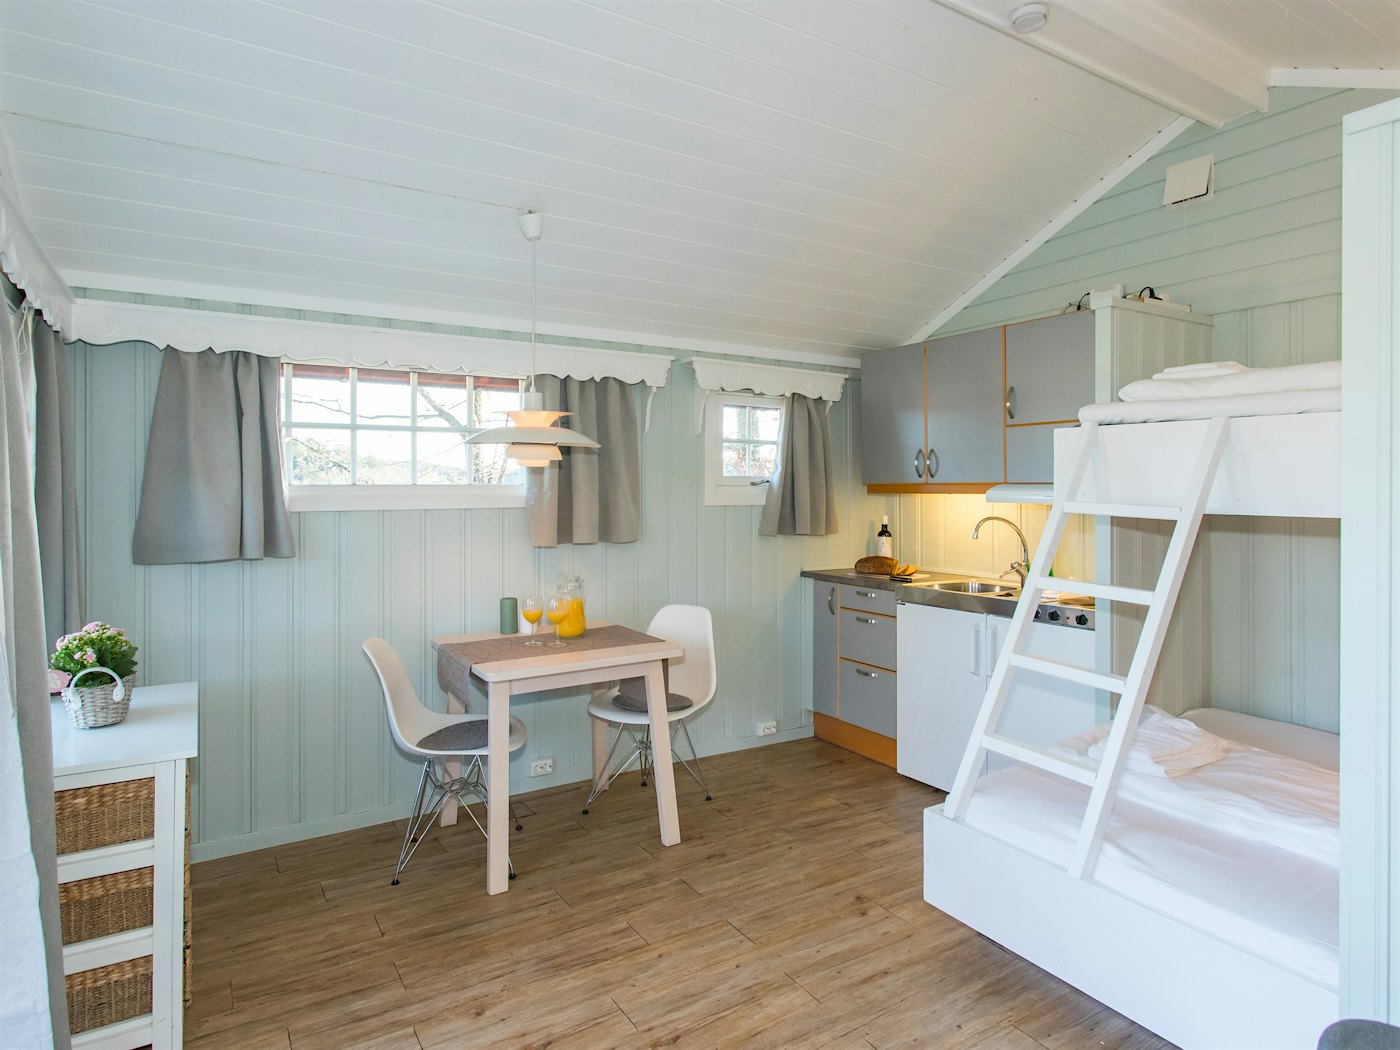 Helles Zimmer mit Etagenbett für die Familie, Esstisch und Küchenzeile. Foto